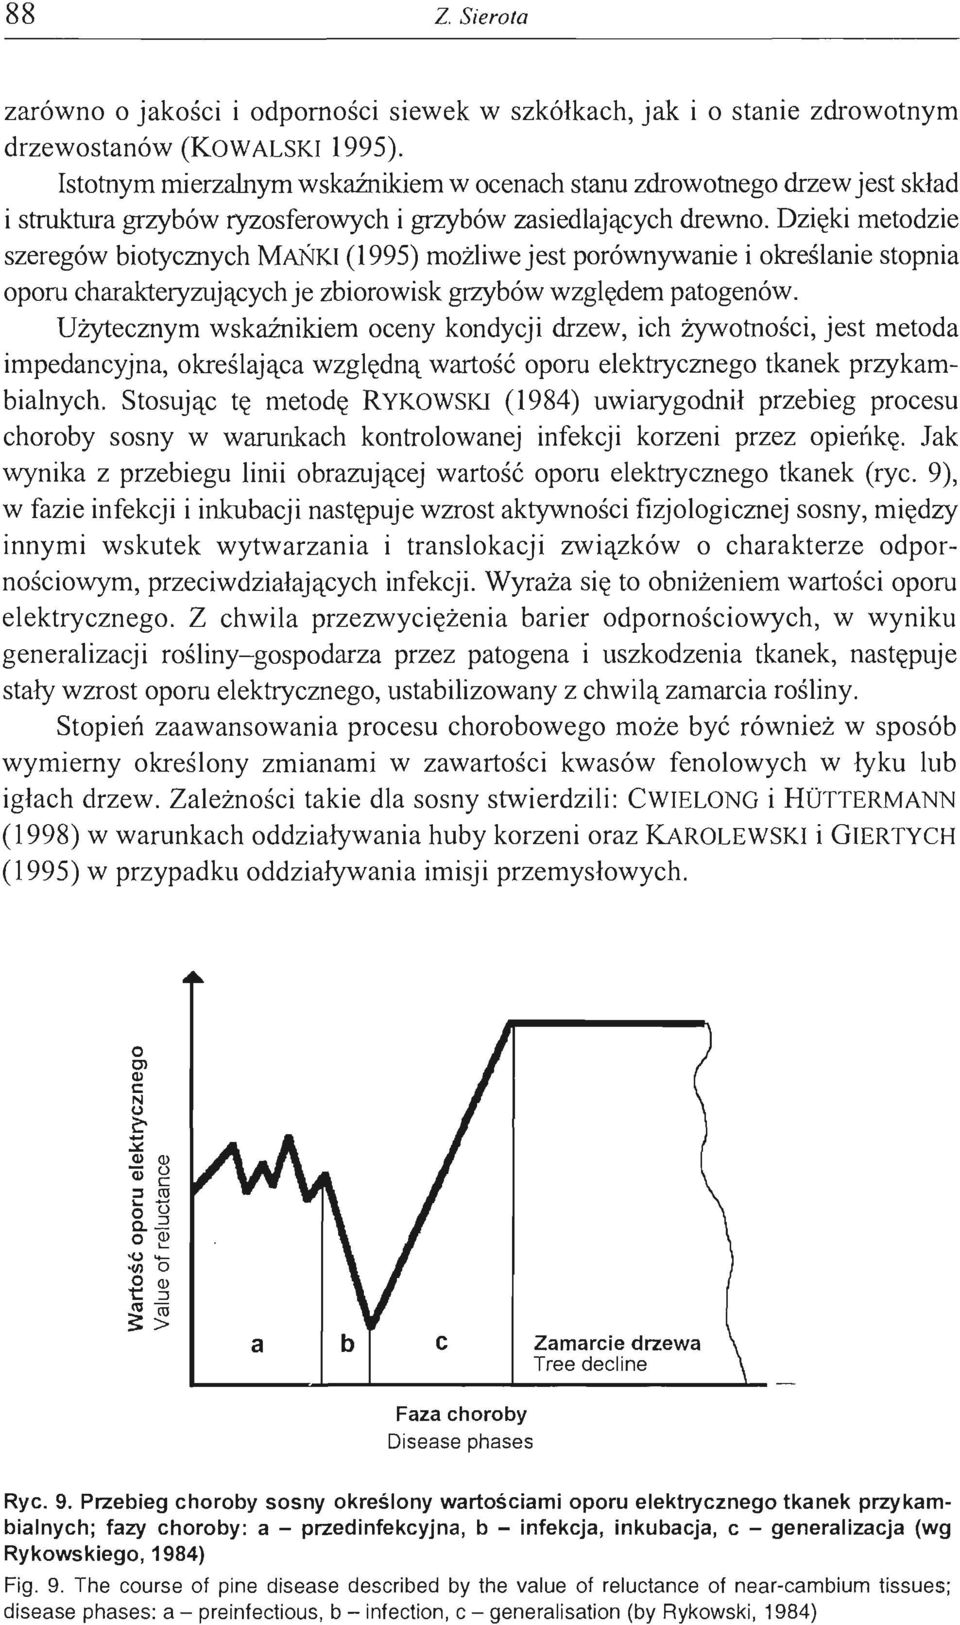 Dzięki metodzie szeregów biotycznych MAŃKI (1995) możliwe jest porównywanie i określanie stopnia oporu charakteryzujących je zbiorowisk grzybów względem patogenów.